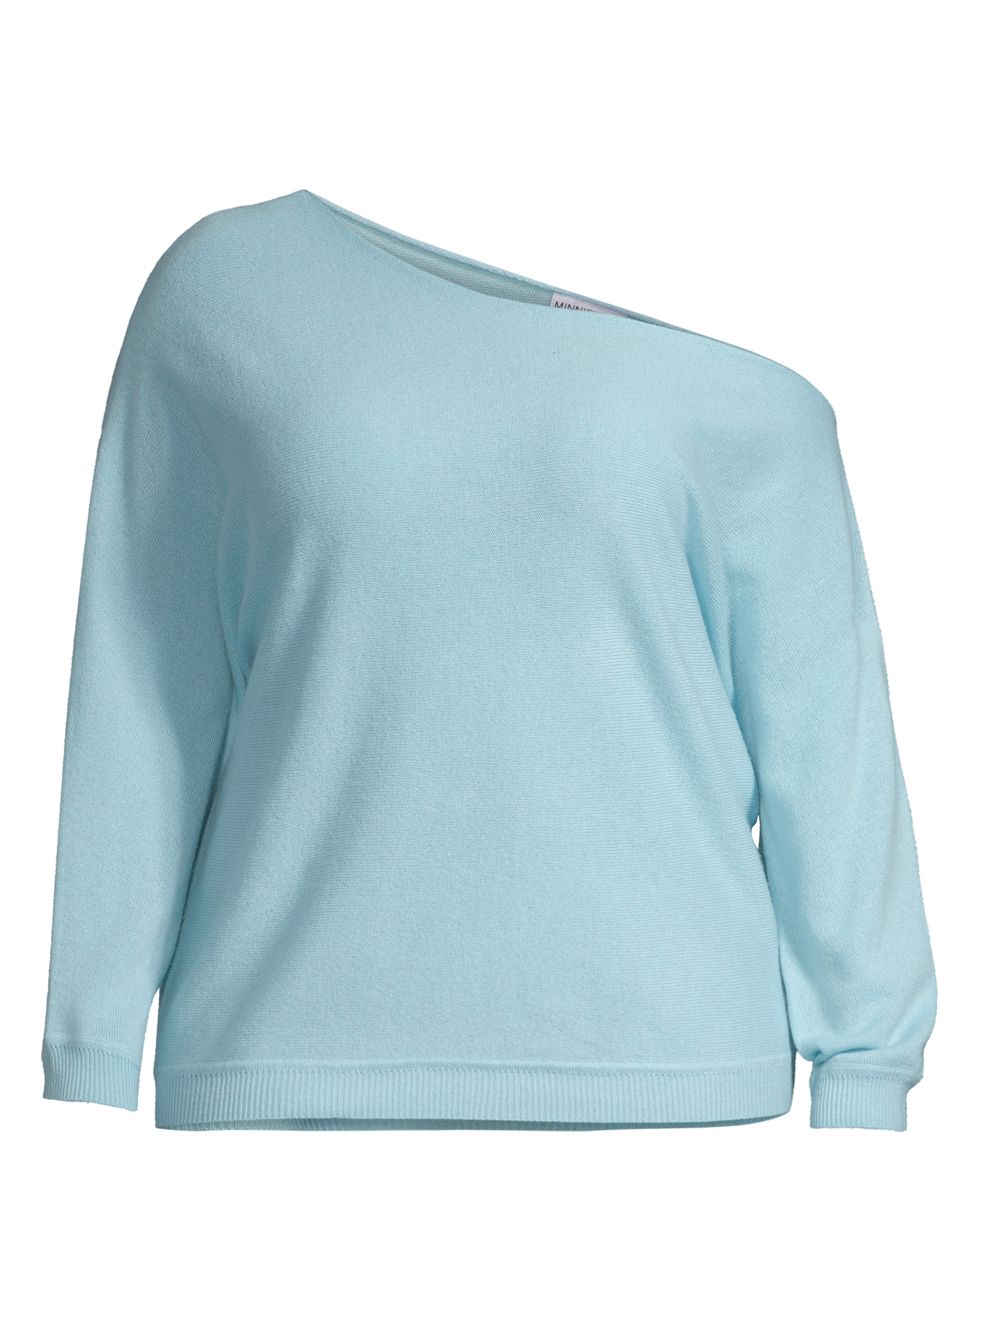 Кашемировый свитер с открытыми плечами Minnie Rose, синий